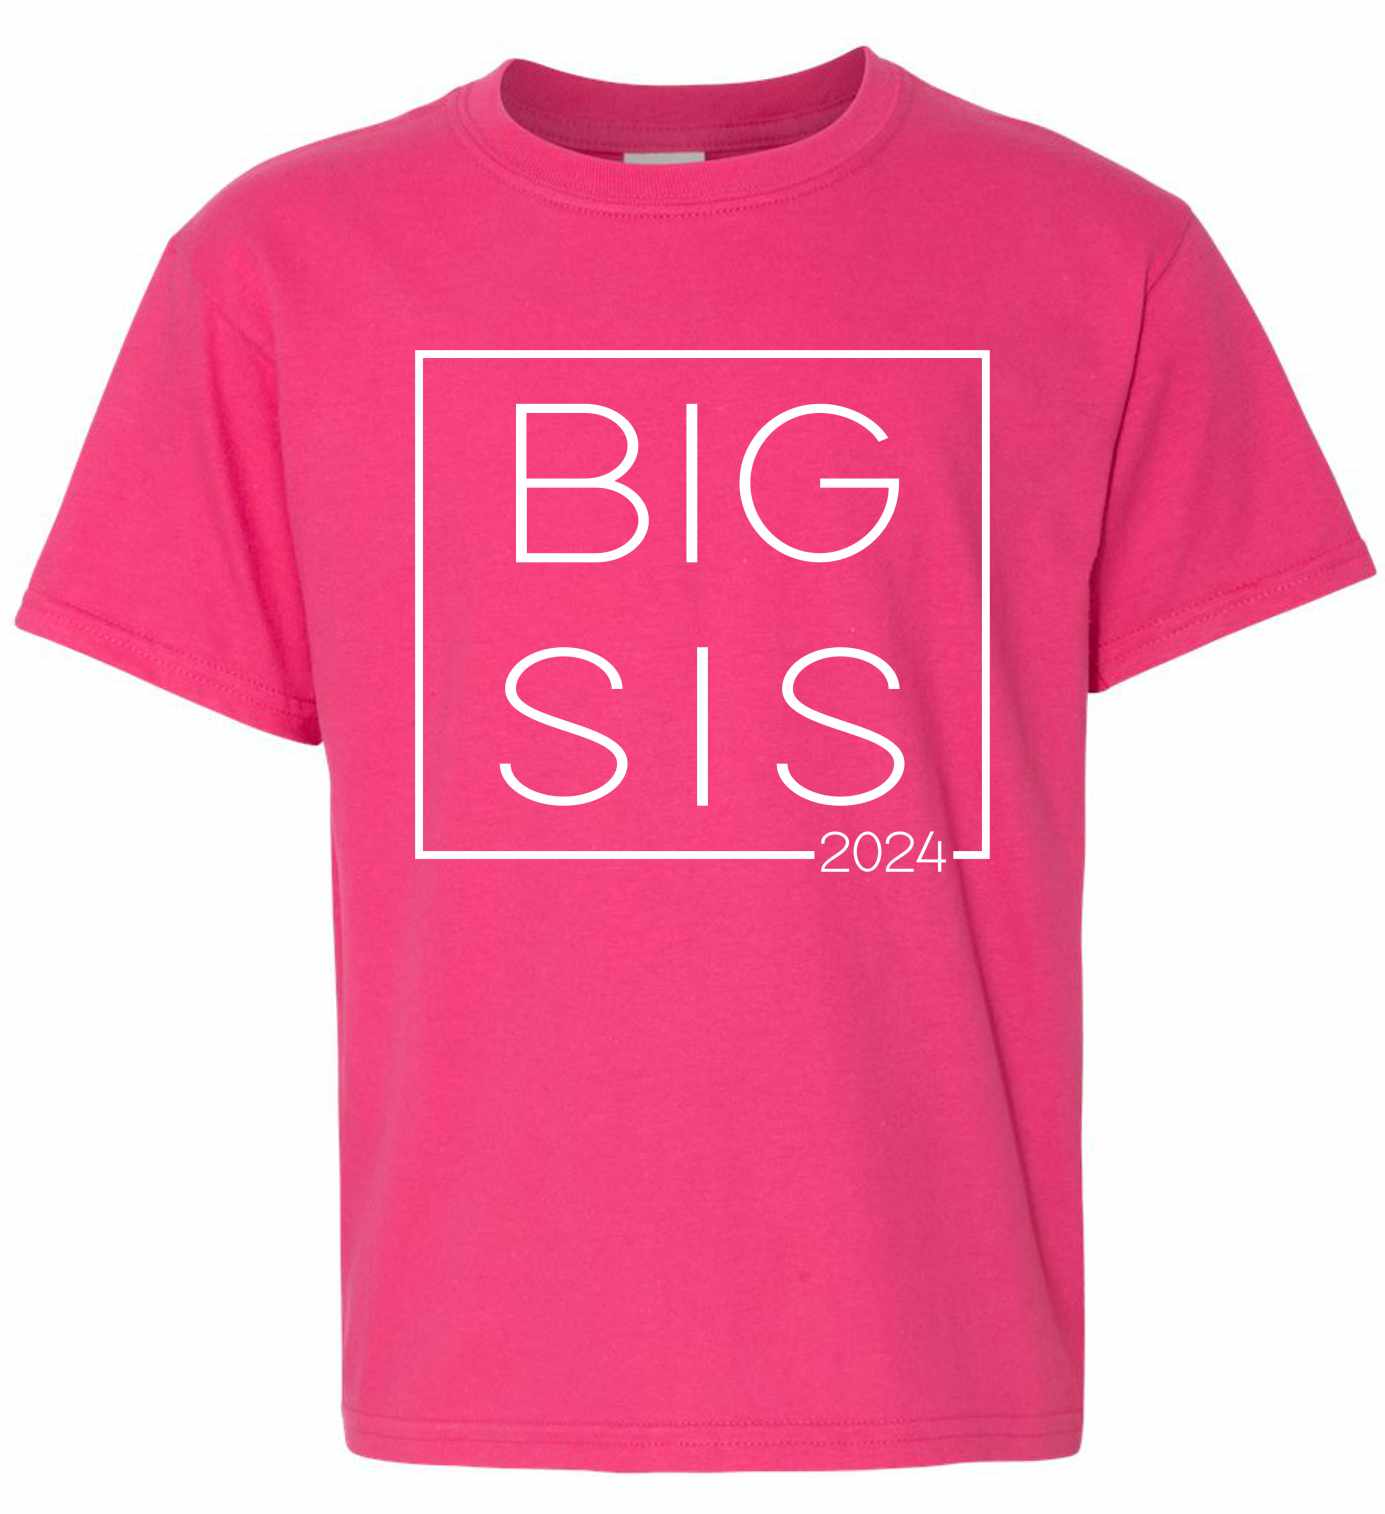 Big Sis 2024 - Big Sister Boxed on Kids T-Shirt (#1380-201)